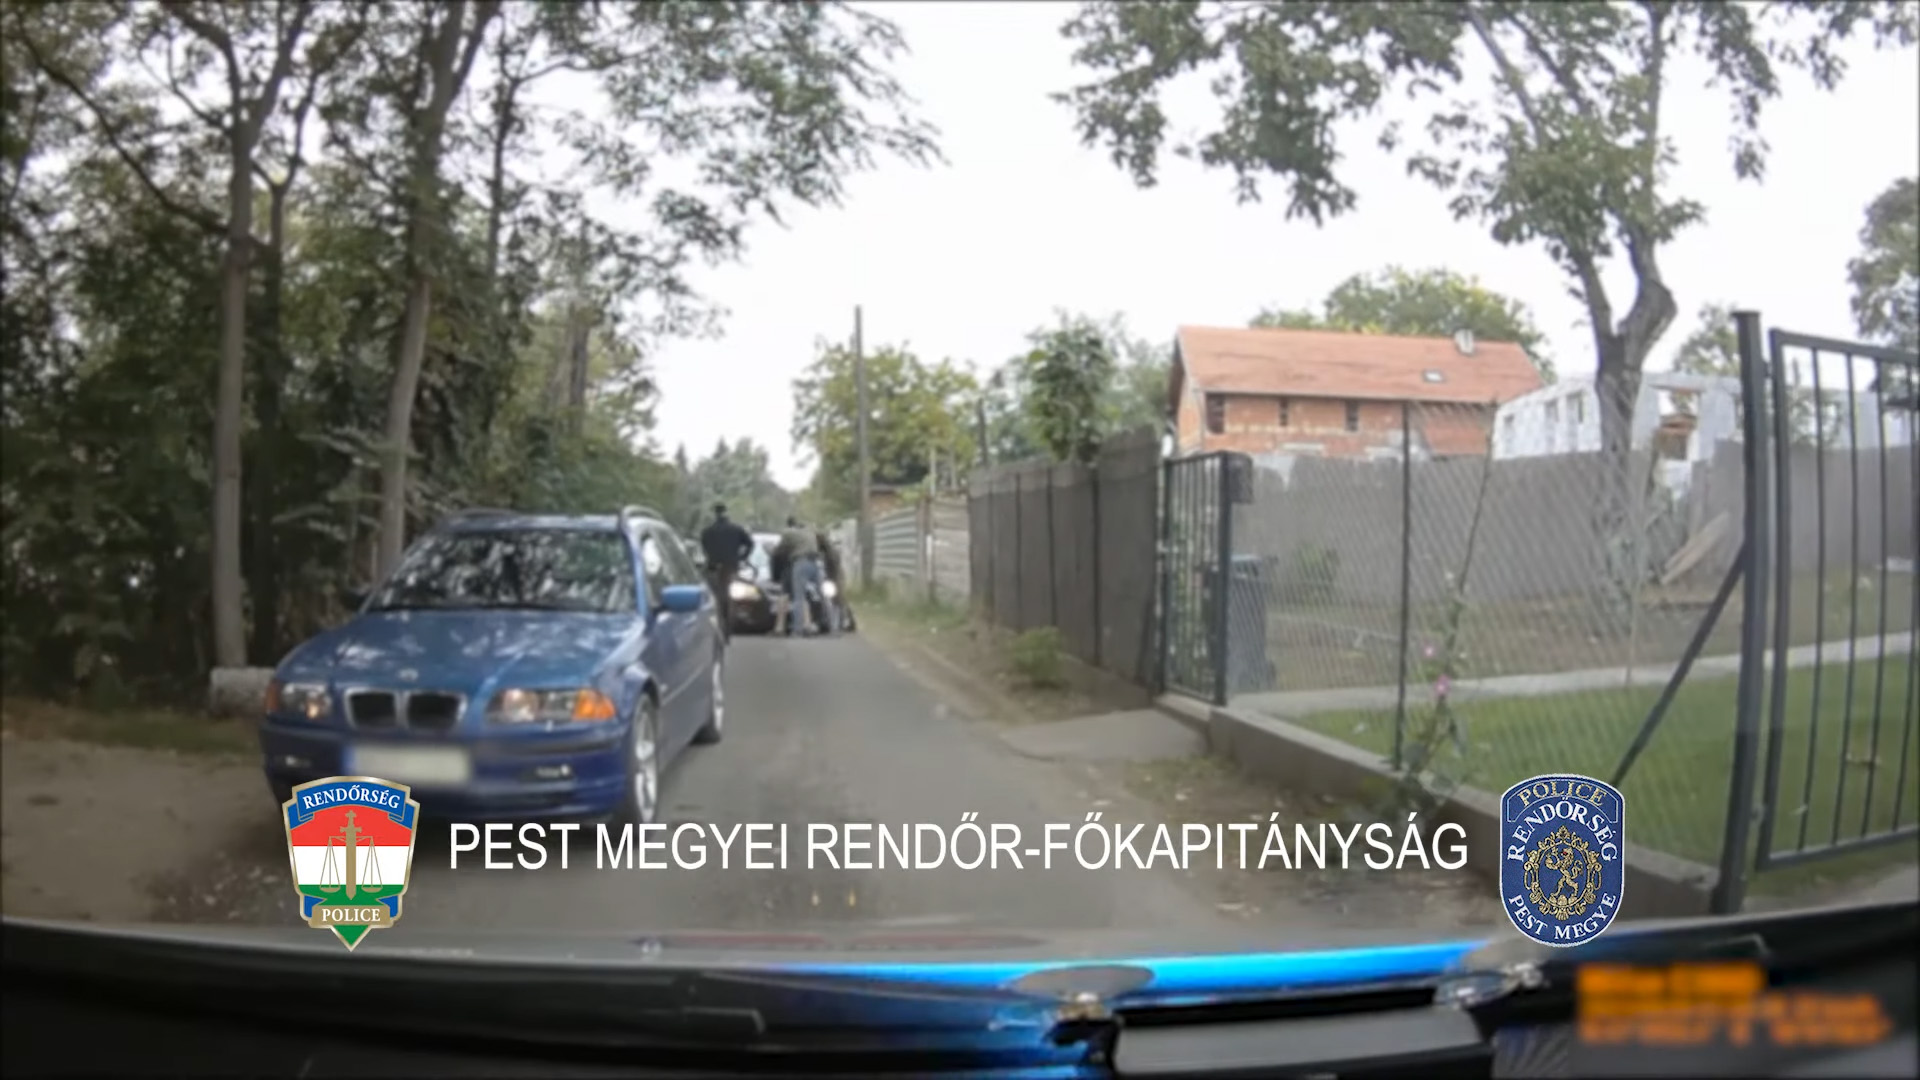 Egy budapesti férfit üldöztek a rendőrök, akciófilmbe illő jeleneteket produkálva